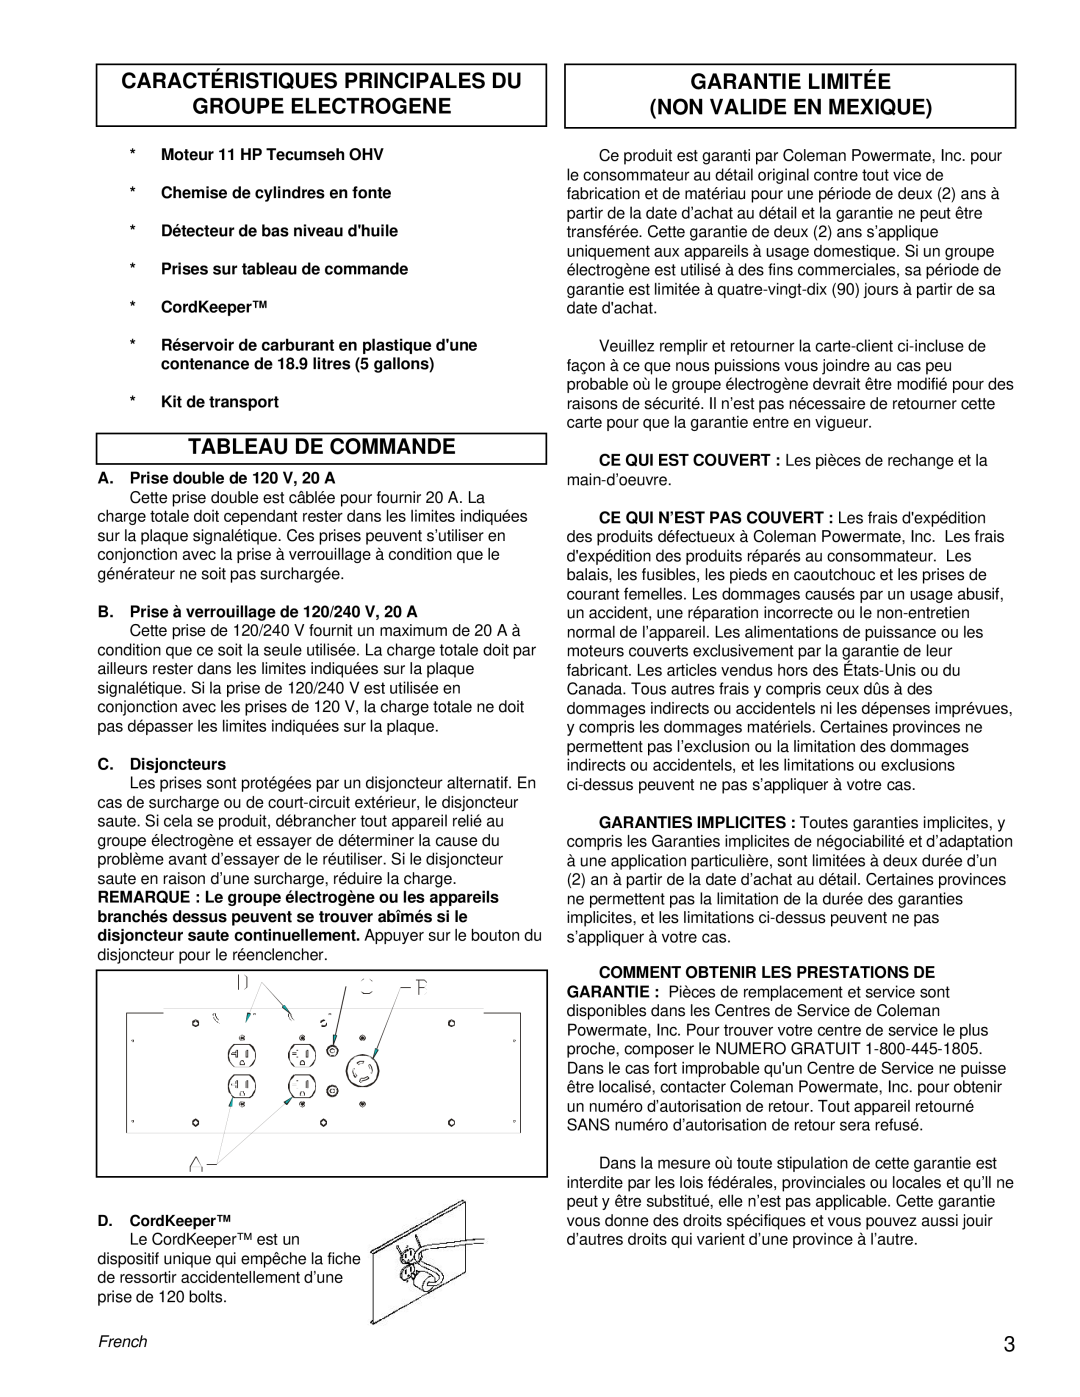 Coleman PM0525300.18 manual Caractéristiques Principales Du, Groupe Electrogene, Tableau De Commande, French 